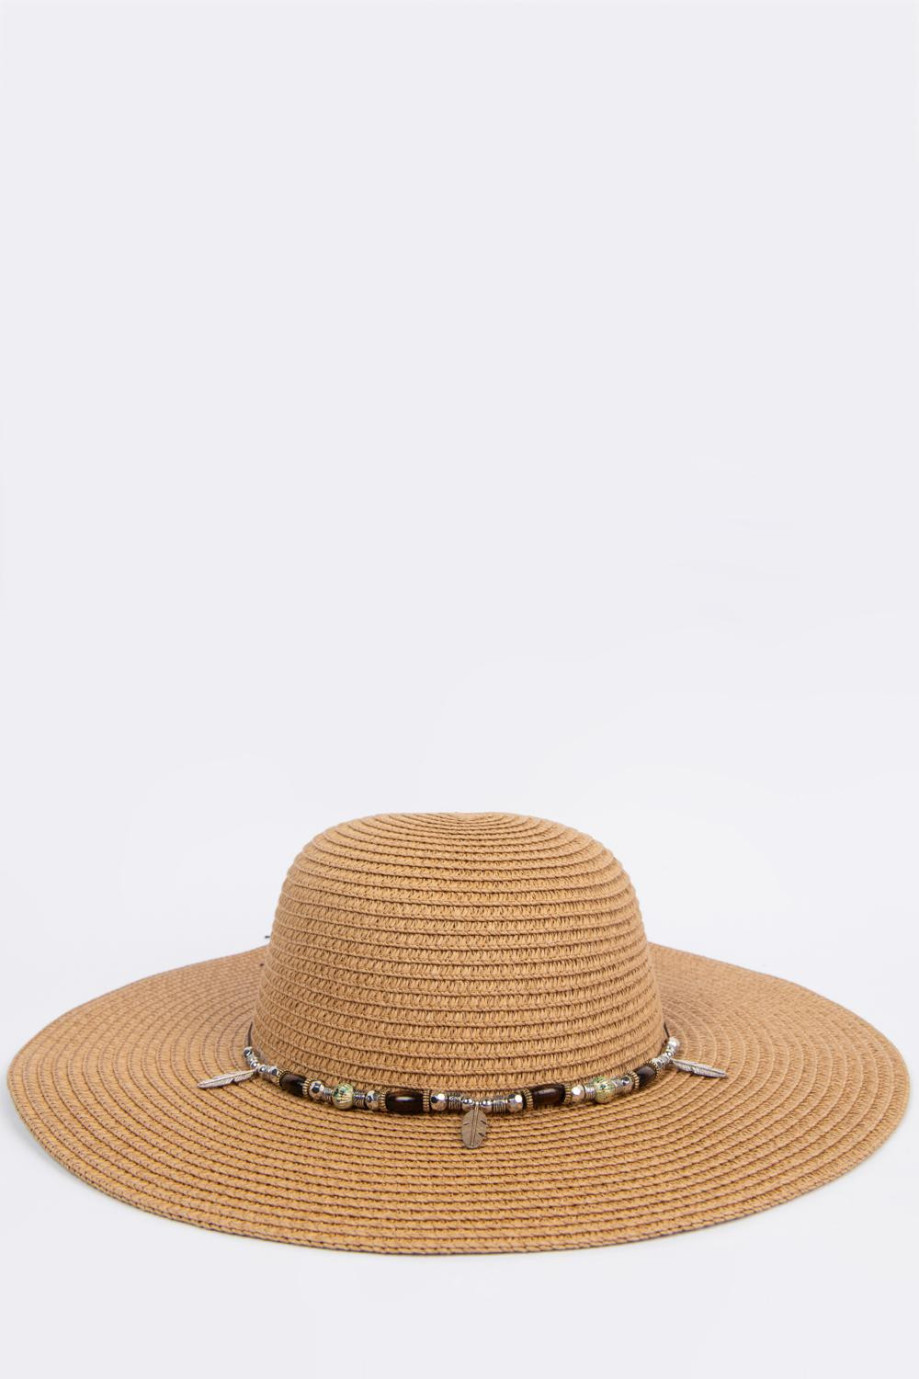 Sombrero kaky claro con ala ancha y detalles decorativos